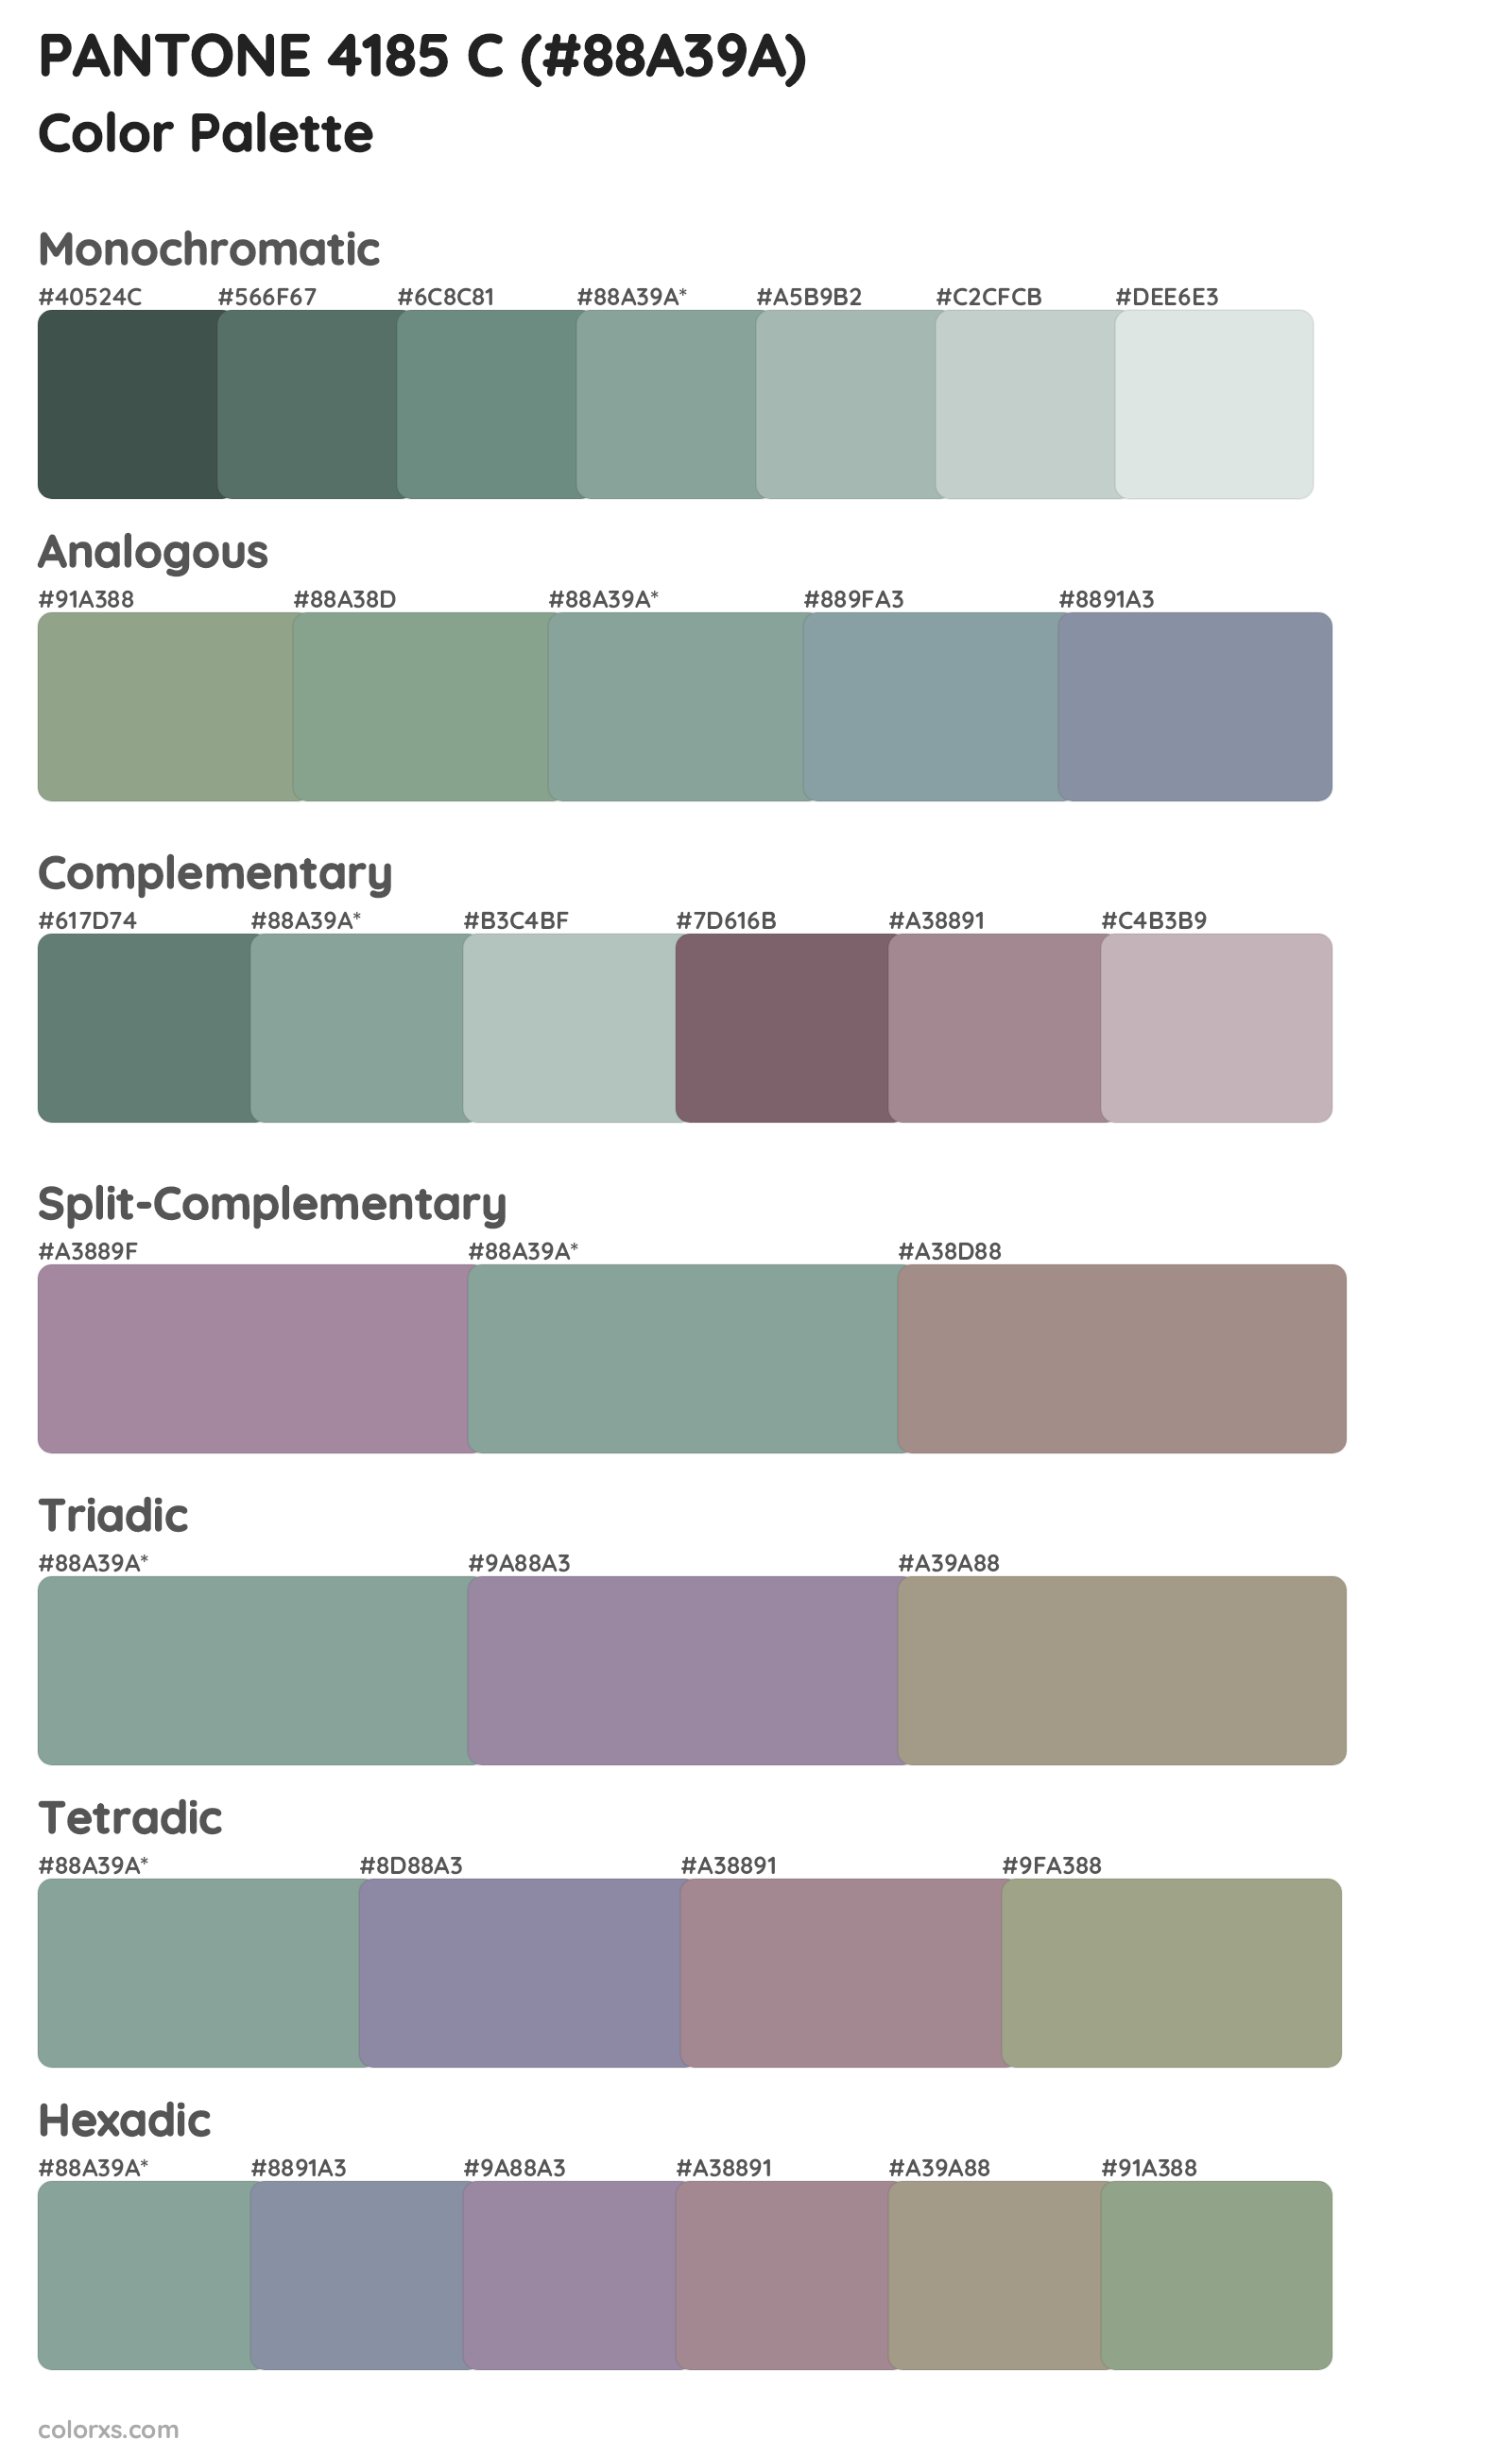 PANTONE 4185 C Color Scheme Palettes